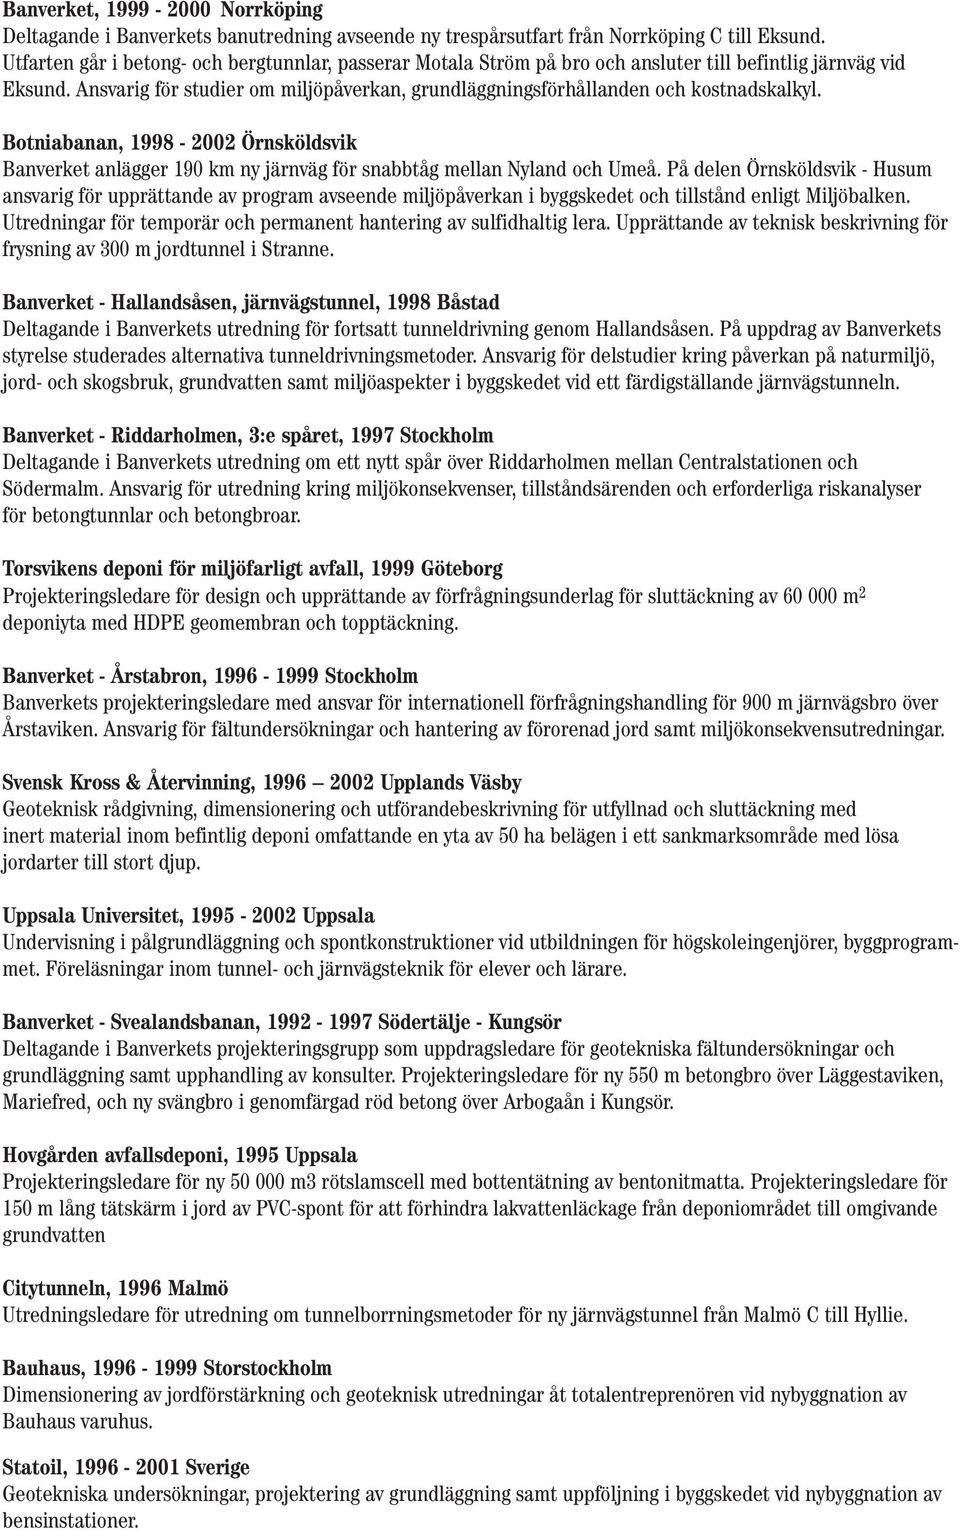 Ansvarig för studier om miljöpåverkan, grundläggningsförhållanden och kostnadskalkyl. Botniabanan, 1998-2002 Örnsköldsvik Banverket anlägger 190 km ny järnväg för snabbtåg mellan Nyland och Umeå.